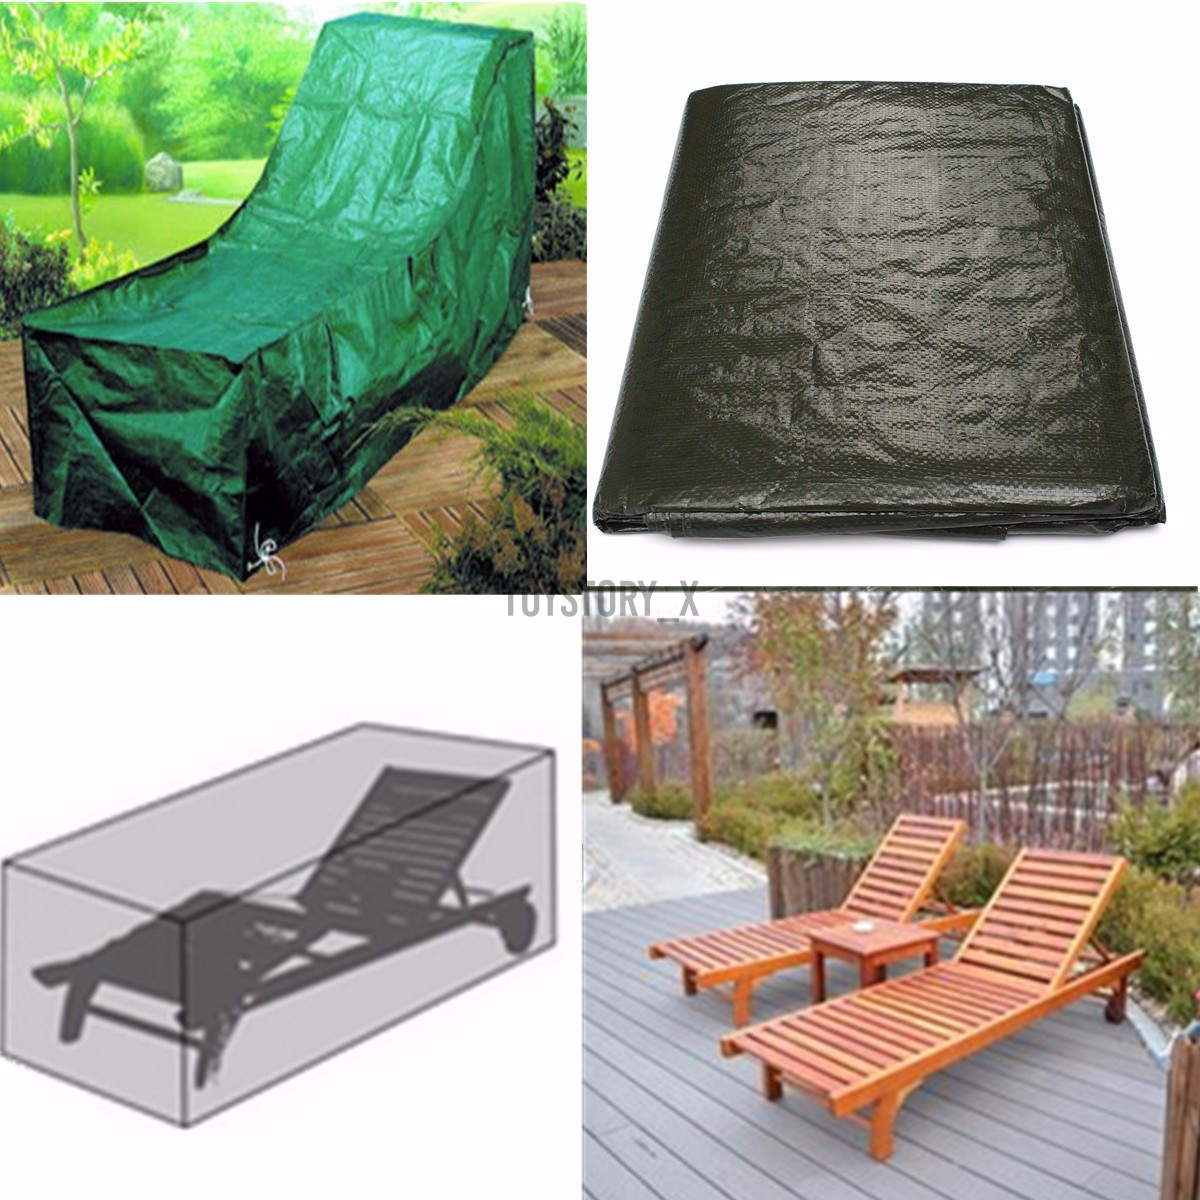 Tấm bạt bọc đồ nội thất / ghế dài sân trong / ngoài vườn chống thấm nước / chống bụi